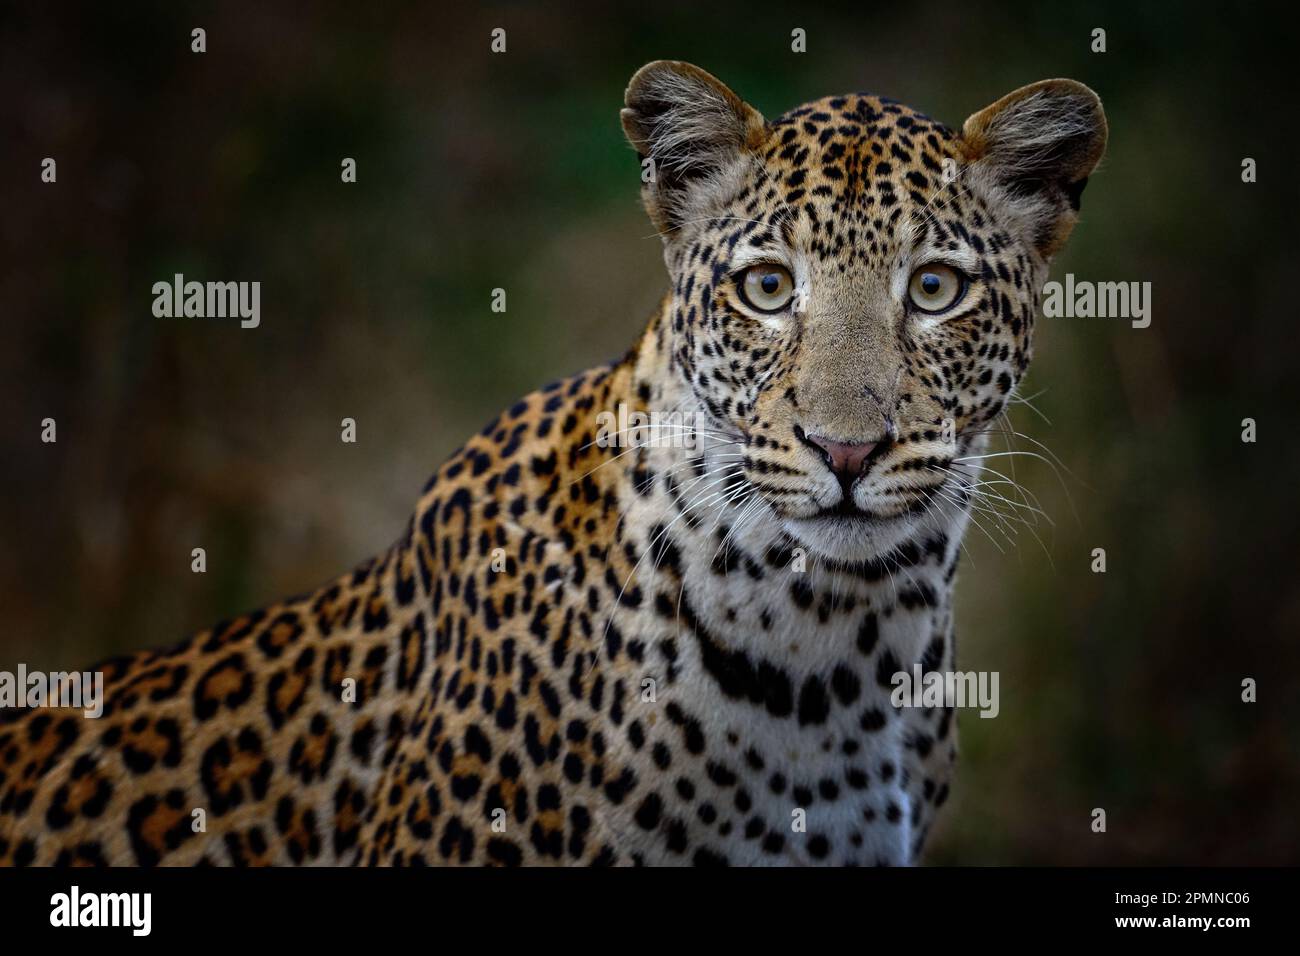 Botswanische Natur. Leopard, Panthera pardus Shortidgei, verstecktes Kopfporträt im schönen orangefarbenen Gras, große Wildkatze in der Natur, sonniger Tag Stockfoto